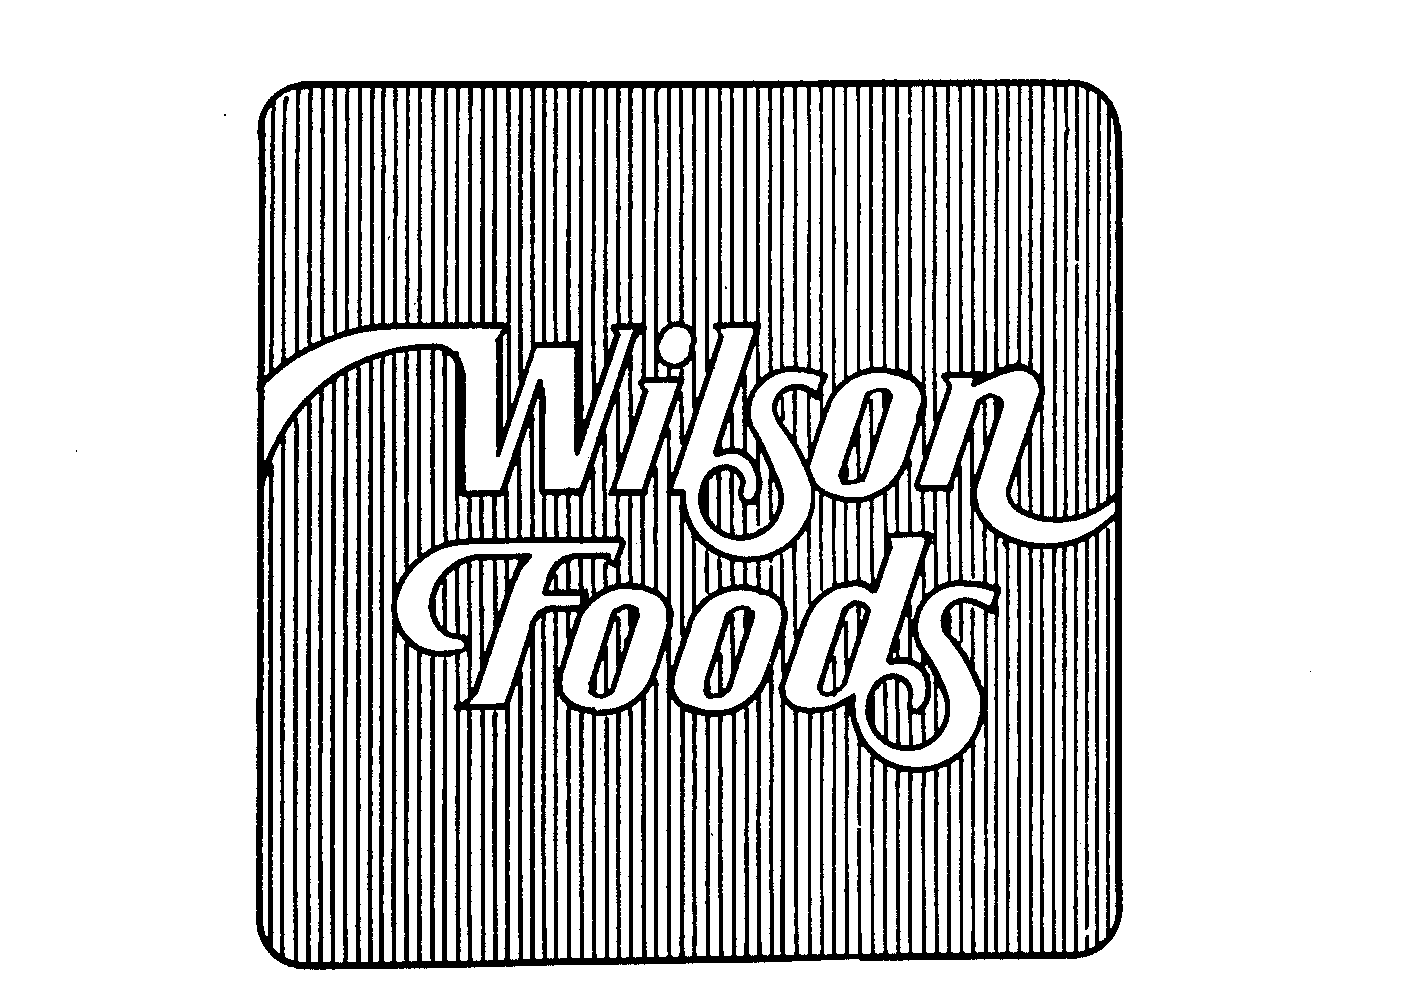  WILSON FOODS